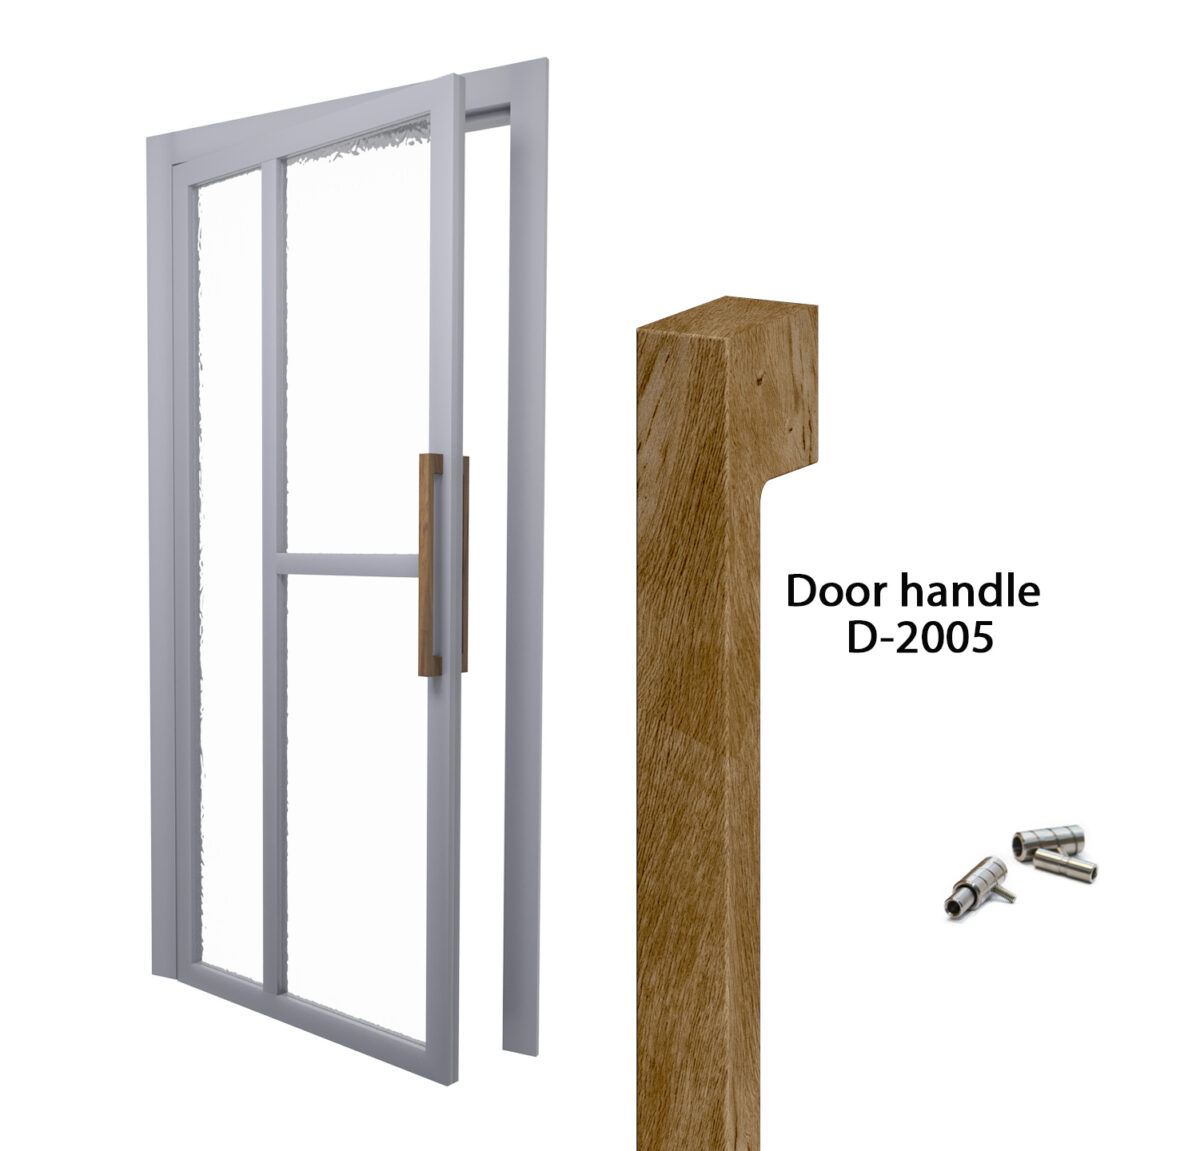 Door wood handles D-2005 set of 2